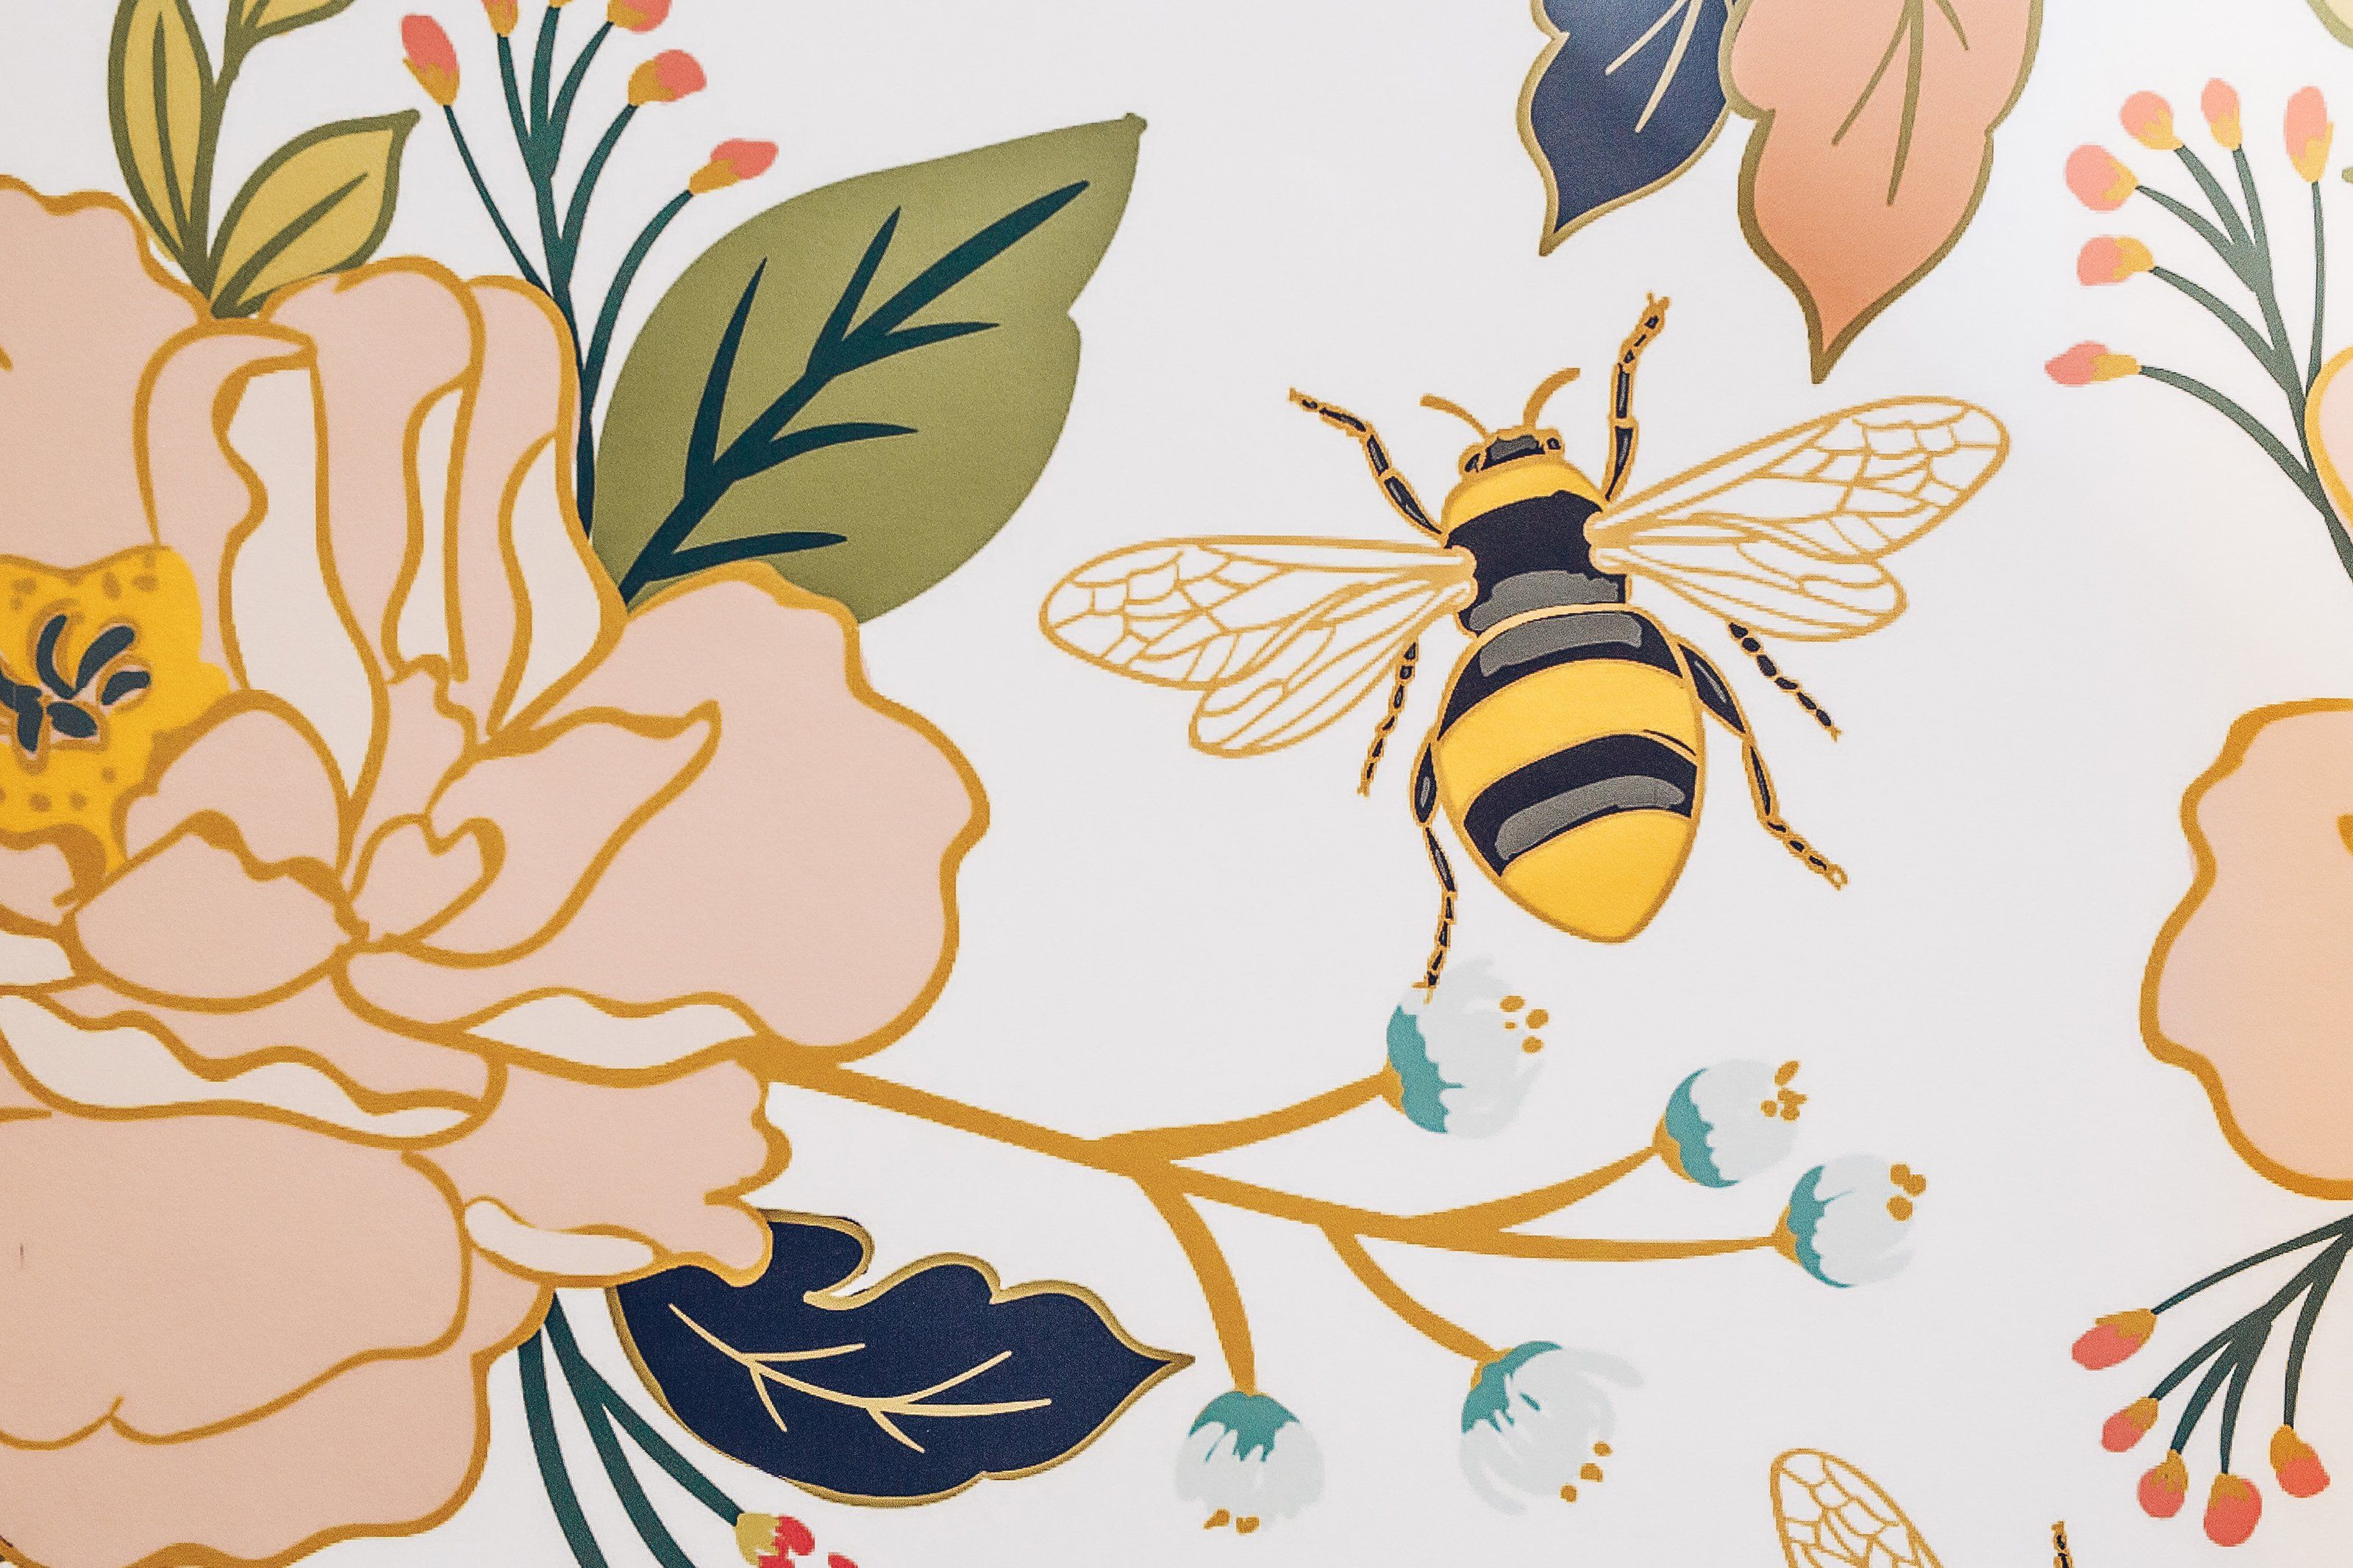 Flower & Honey Bee Wallpaper. Anewall Mural Wallpaper